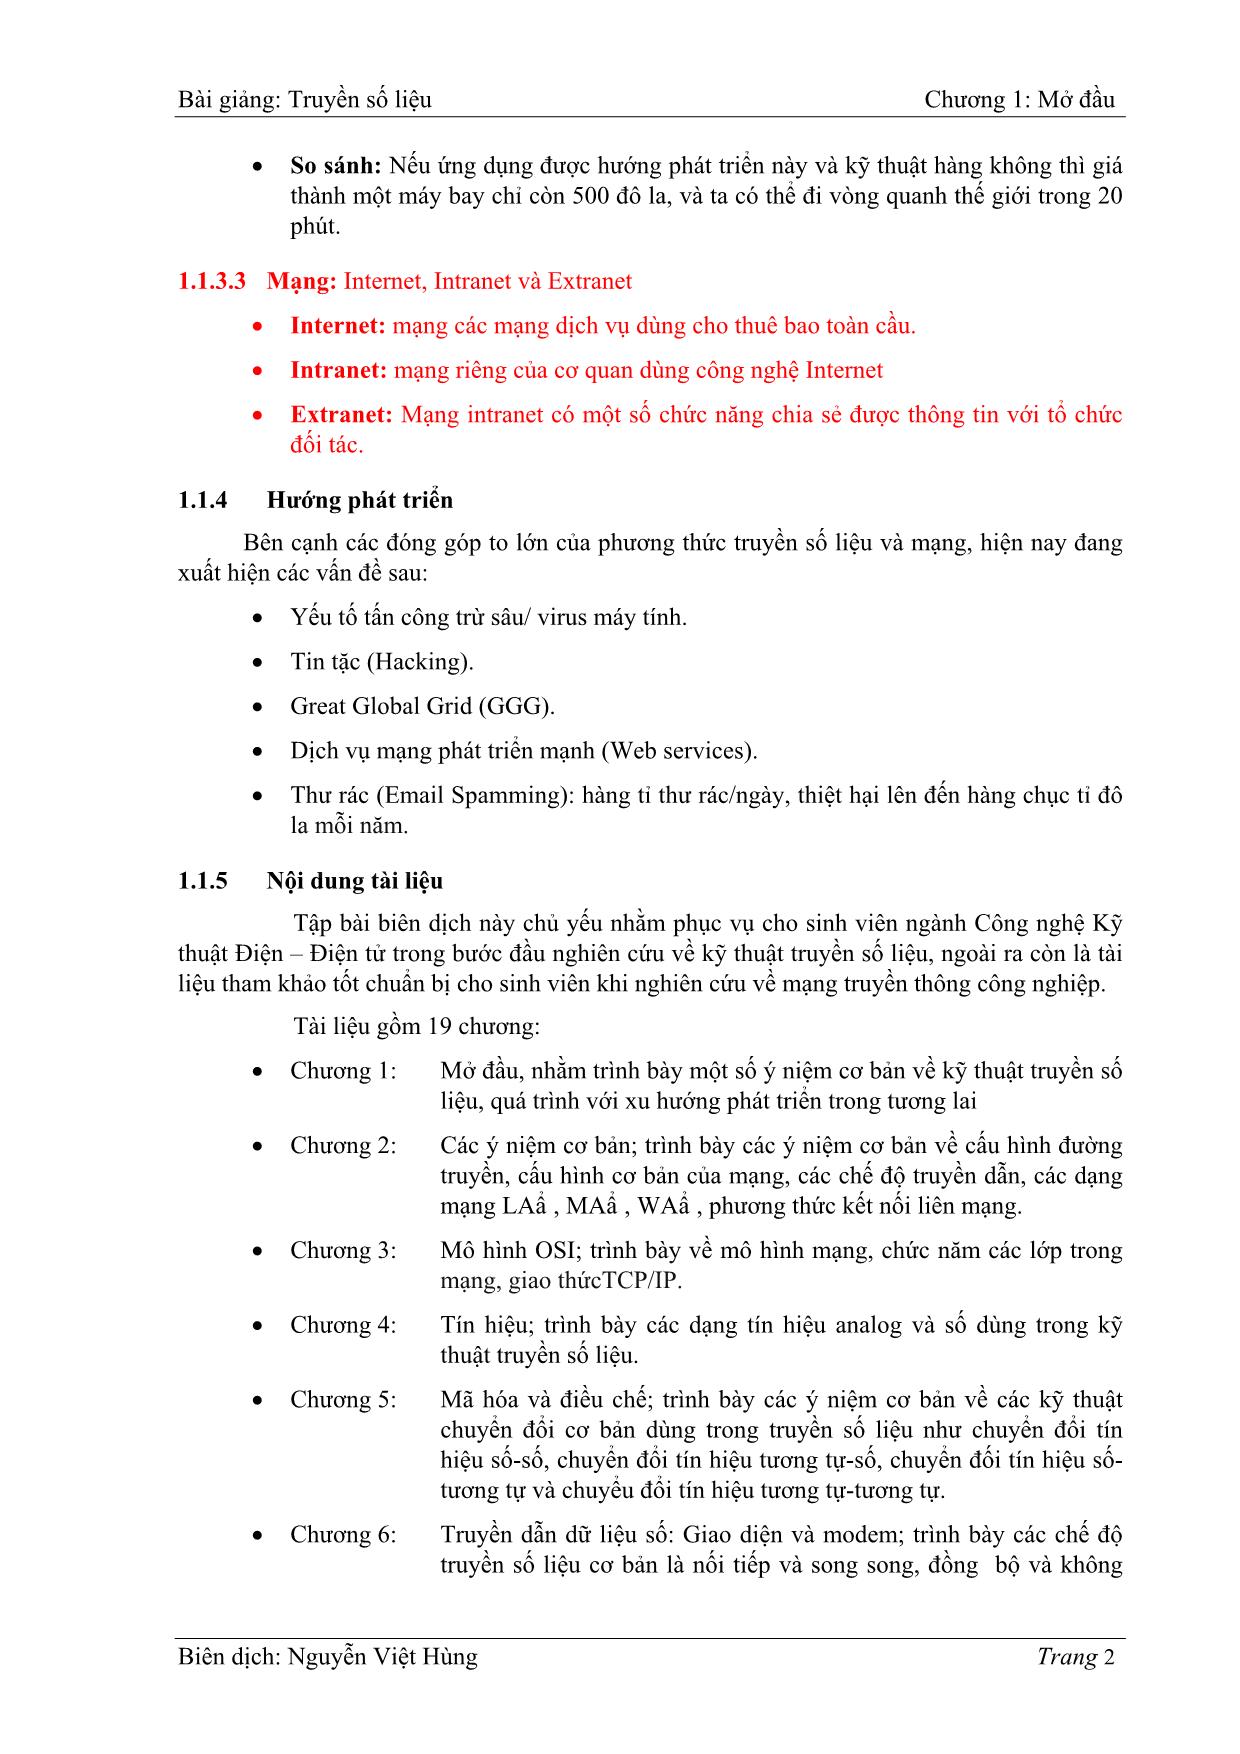 Bài giảng Truyền số liệu - Chương 1: Mở đầu - Nguyễn Việt Hùng trang 2